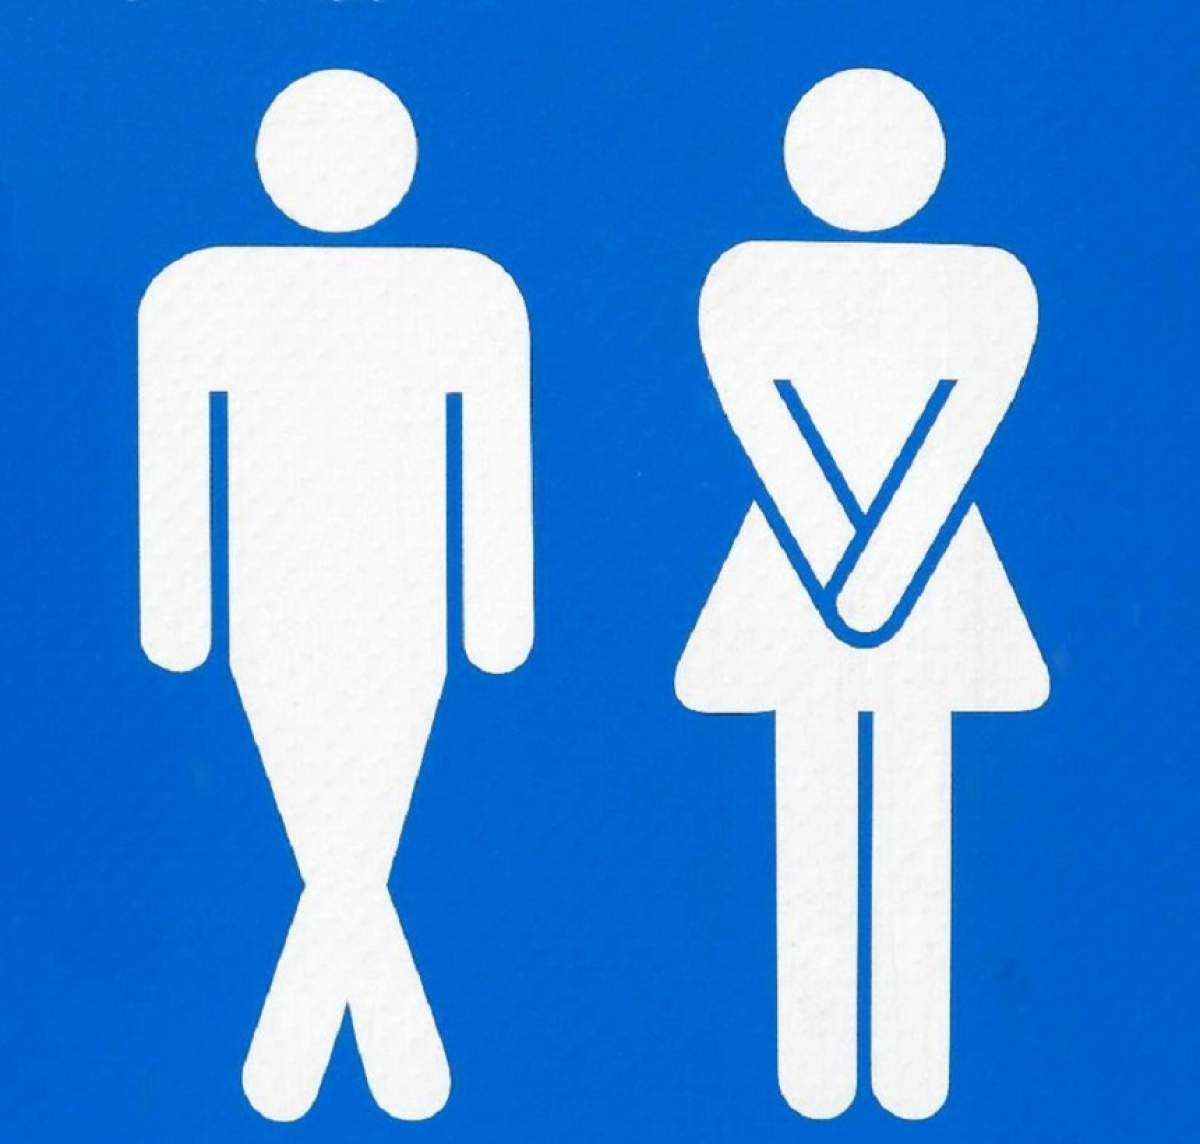 ÎNTREBAREA ZILEI: Ce se întâmplă dacă nu mergi la toaletă atunci când trebuie? Ce probleme apar când nu urinezi la timp